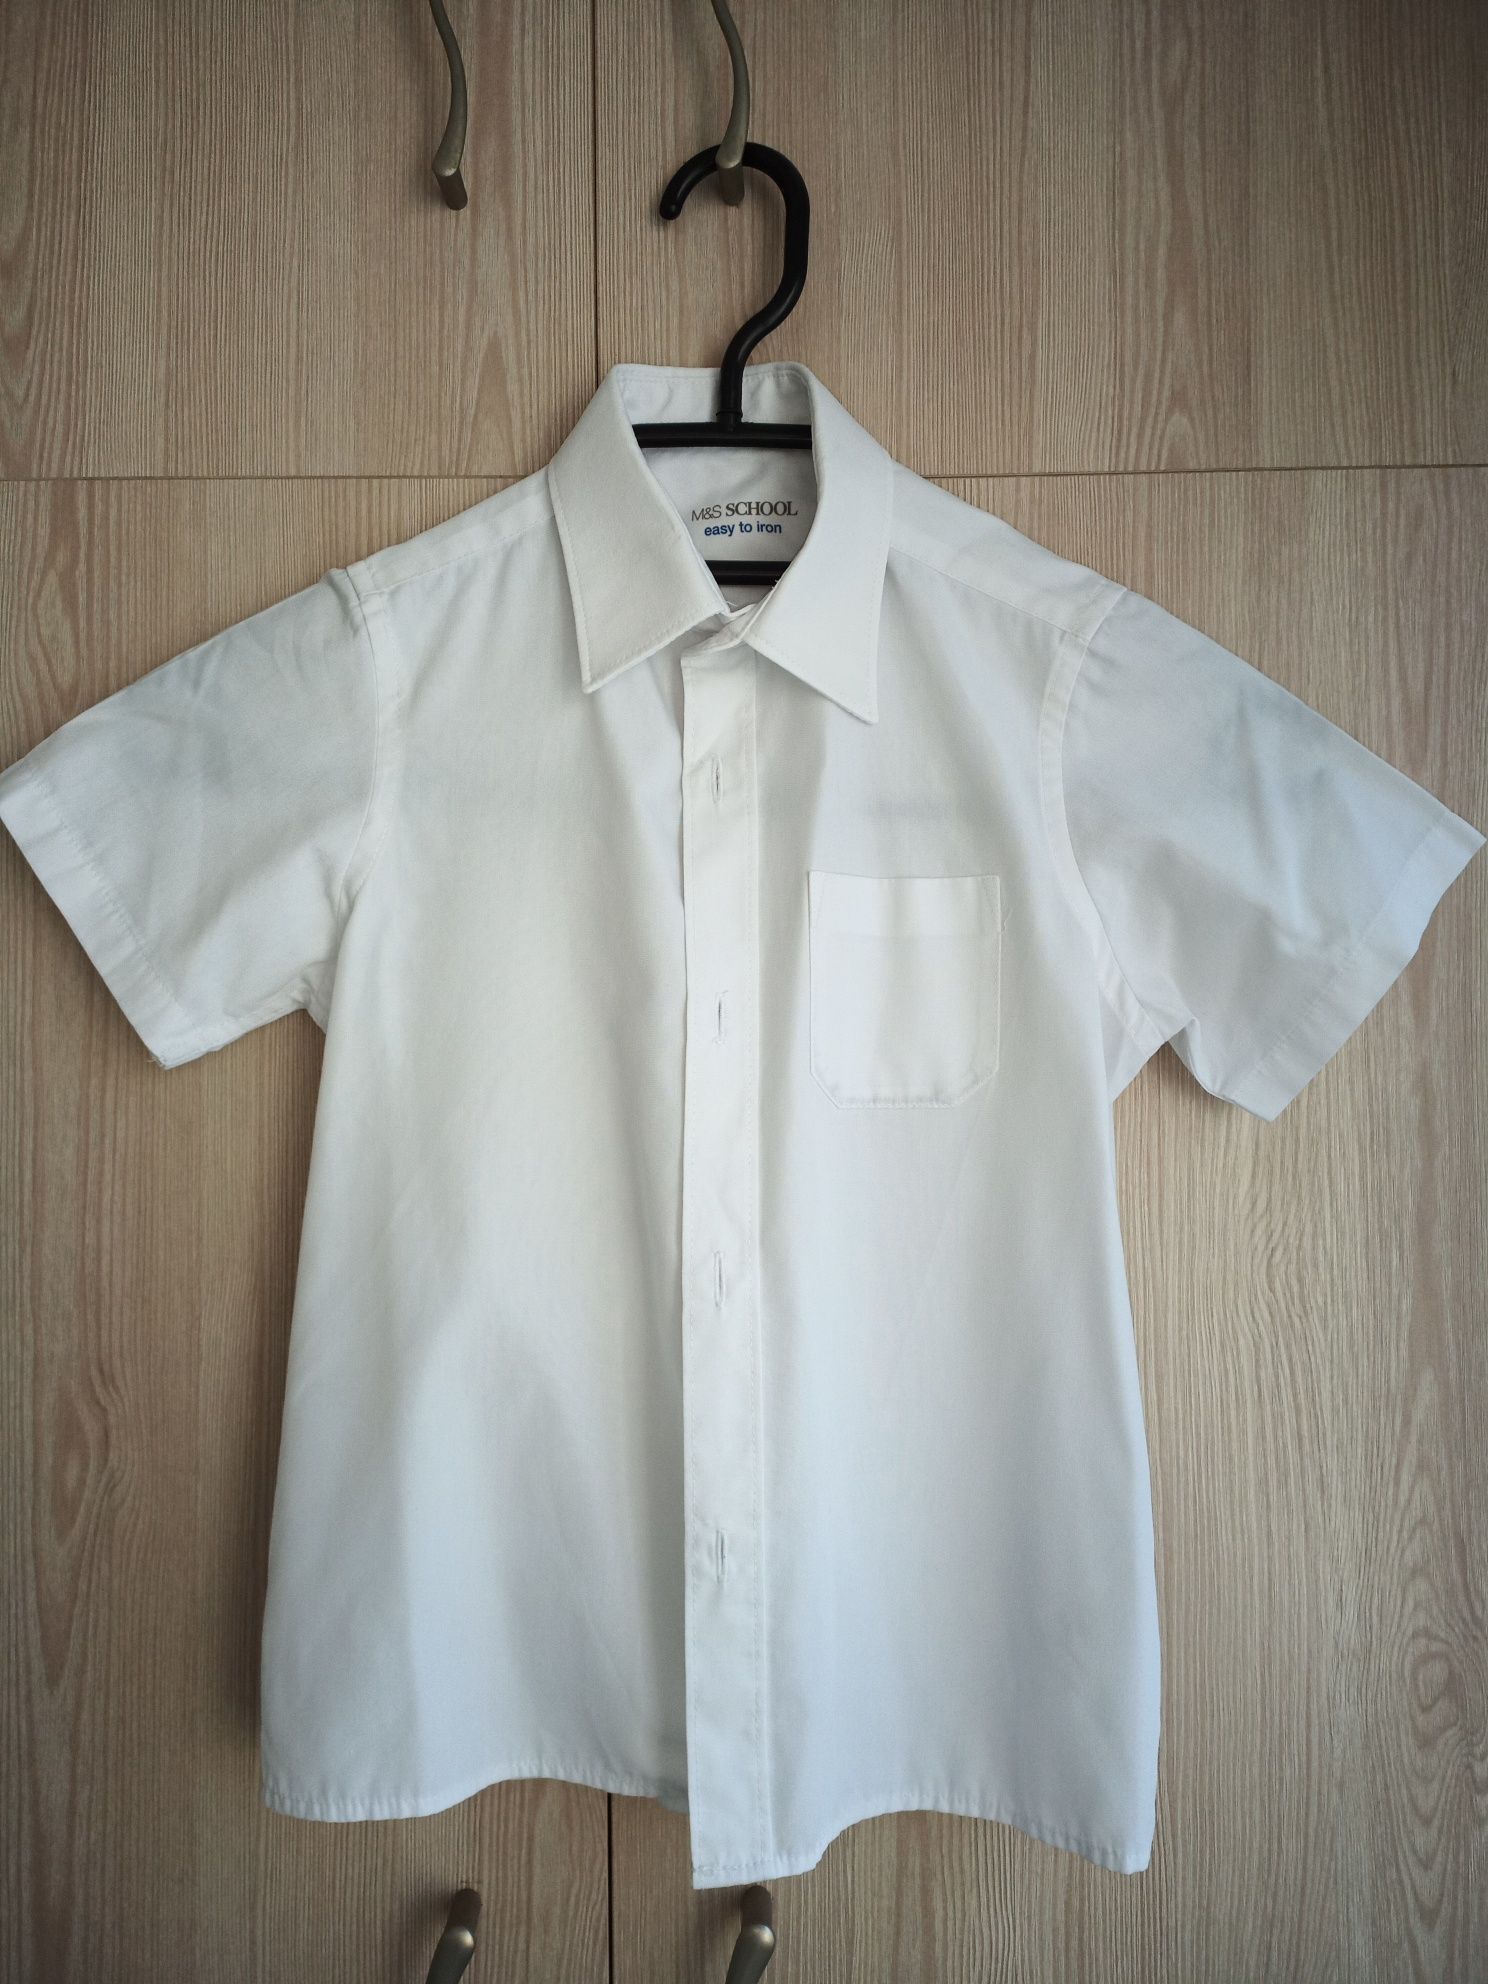 Белая рубашка 2 шт + желетка